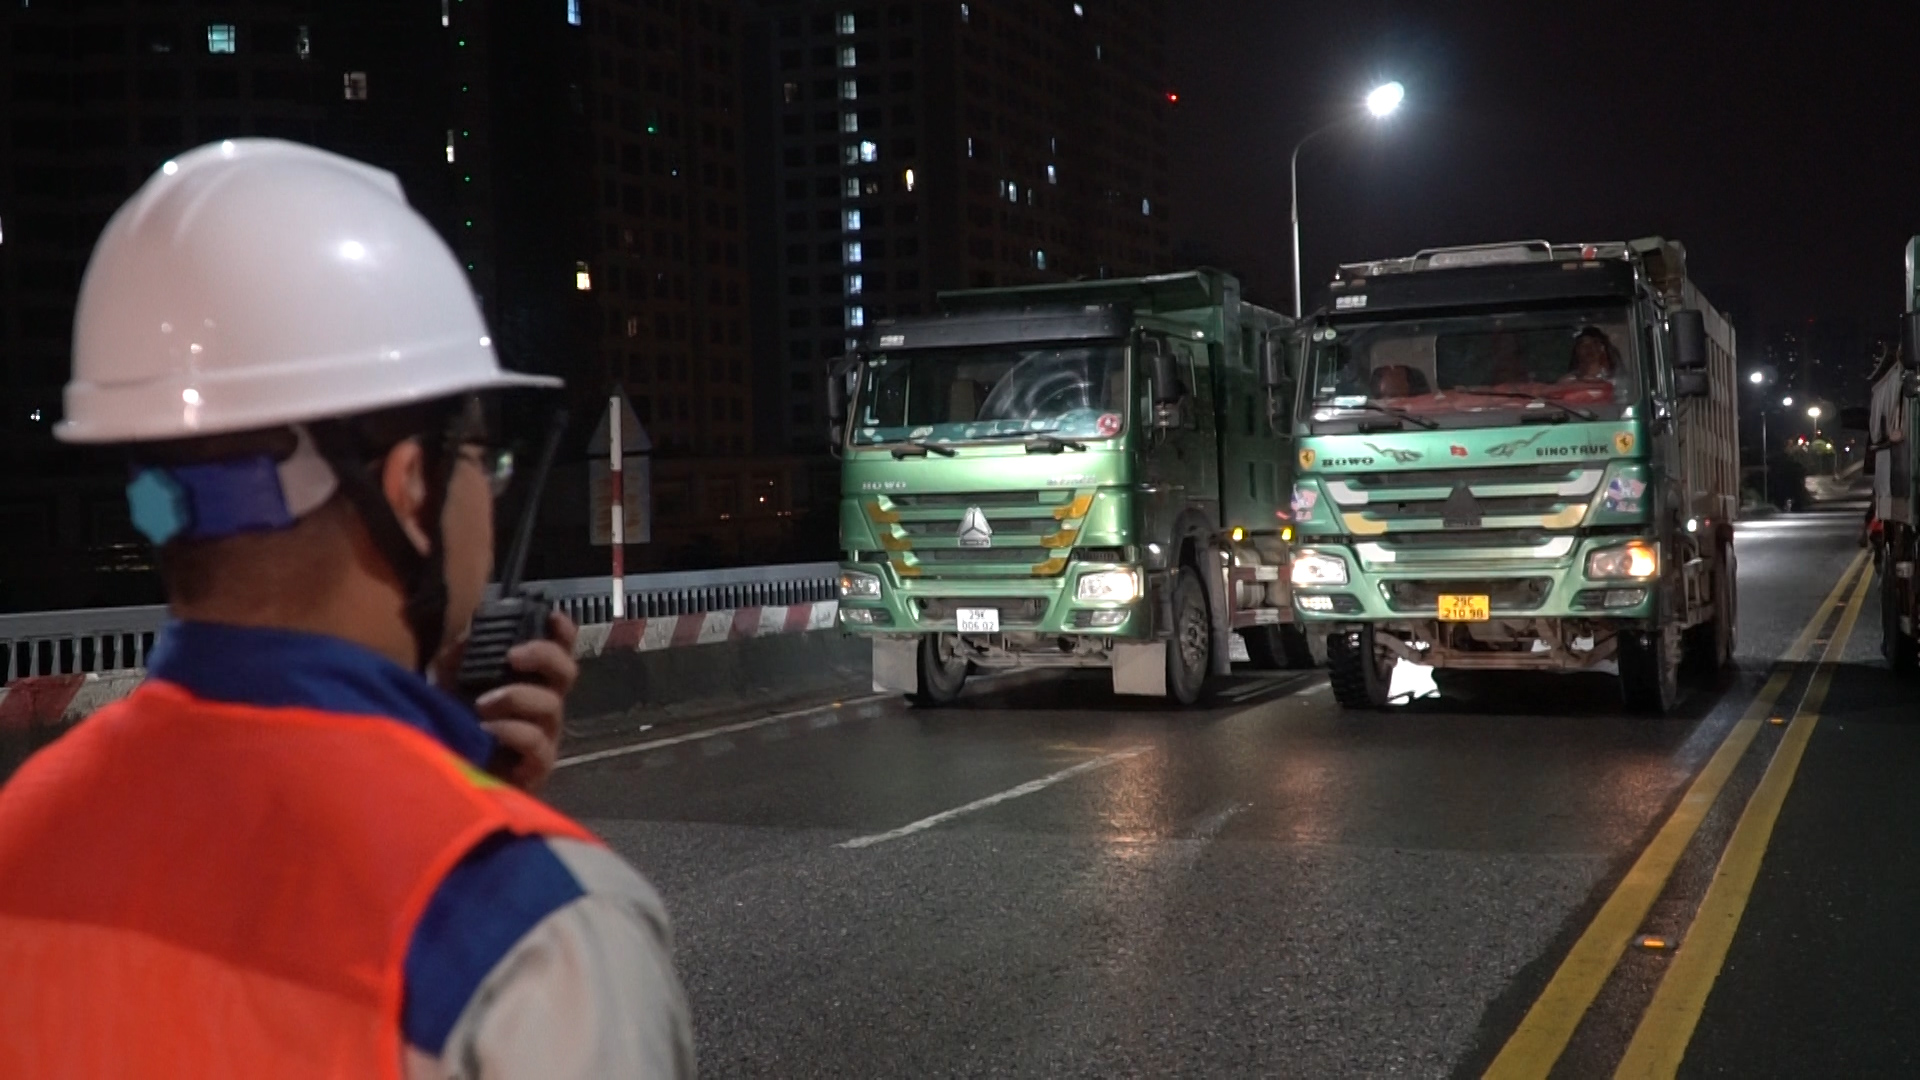  Cầu Thăng Long được kiểm định, nhiều tài xế phải quay đầu, đổi hướng di chuyển  - Ảnh 3.